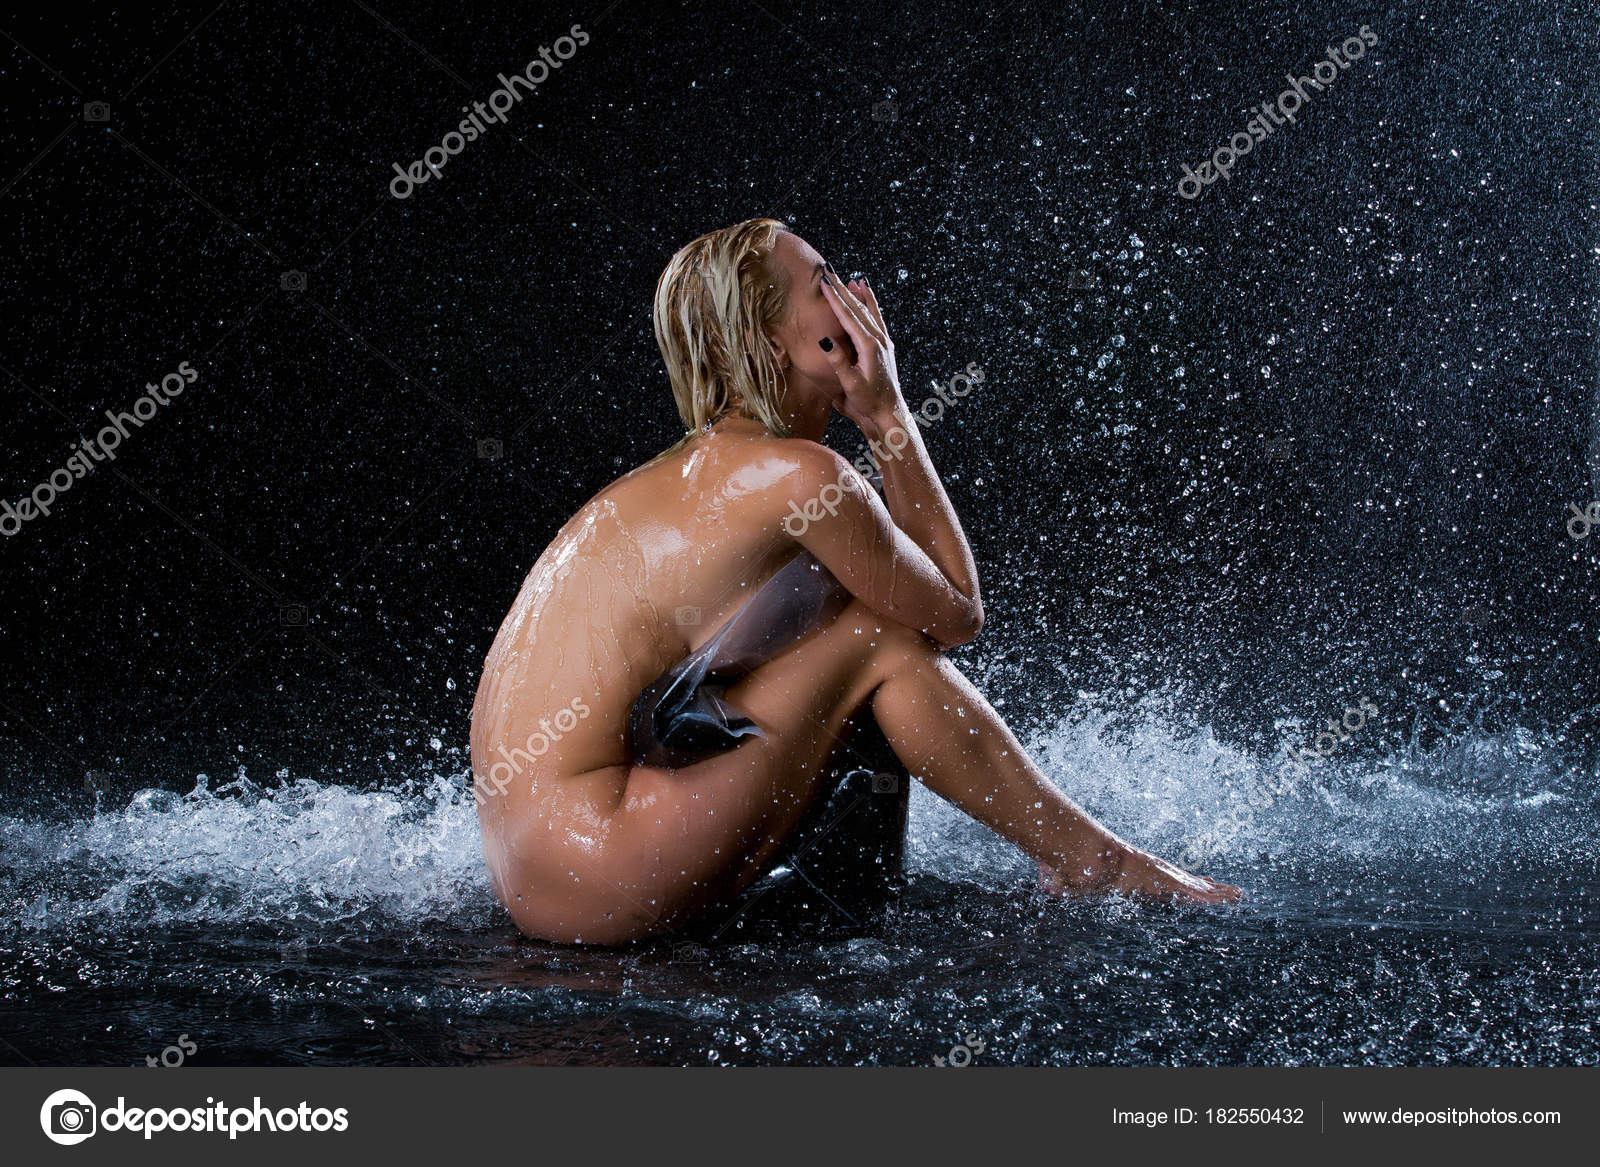 https://st3.depositphotos.com/7570388/18255/i/1600/depositphotos_182550432-stock-photo-naked-girl-sitting-in-the.jpg